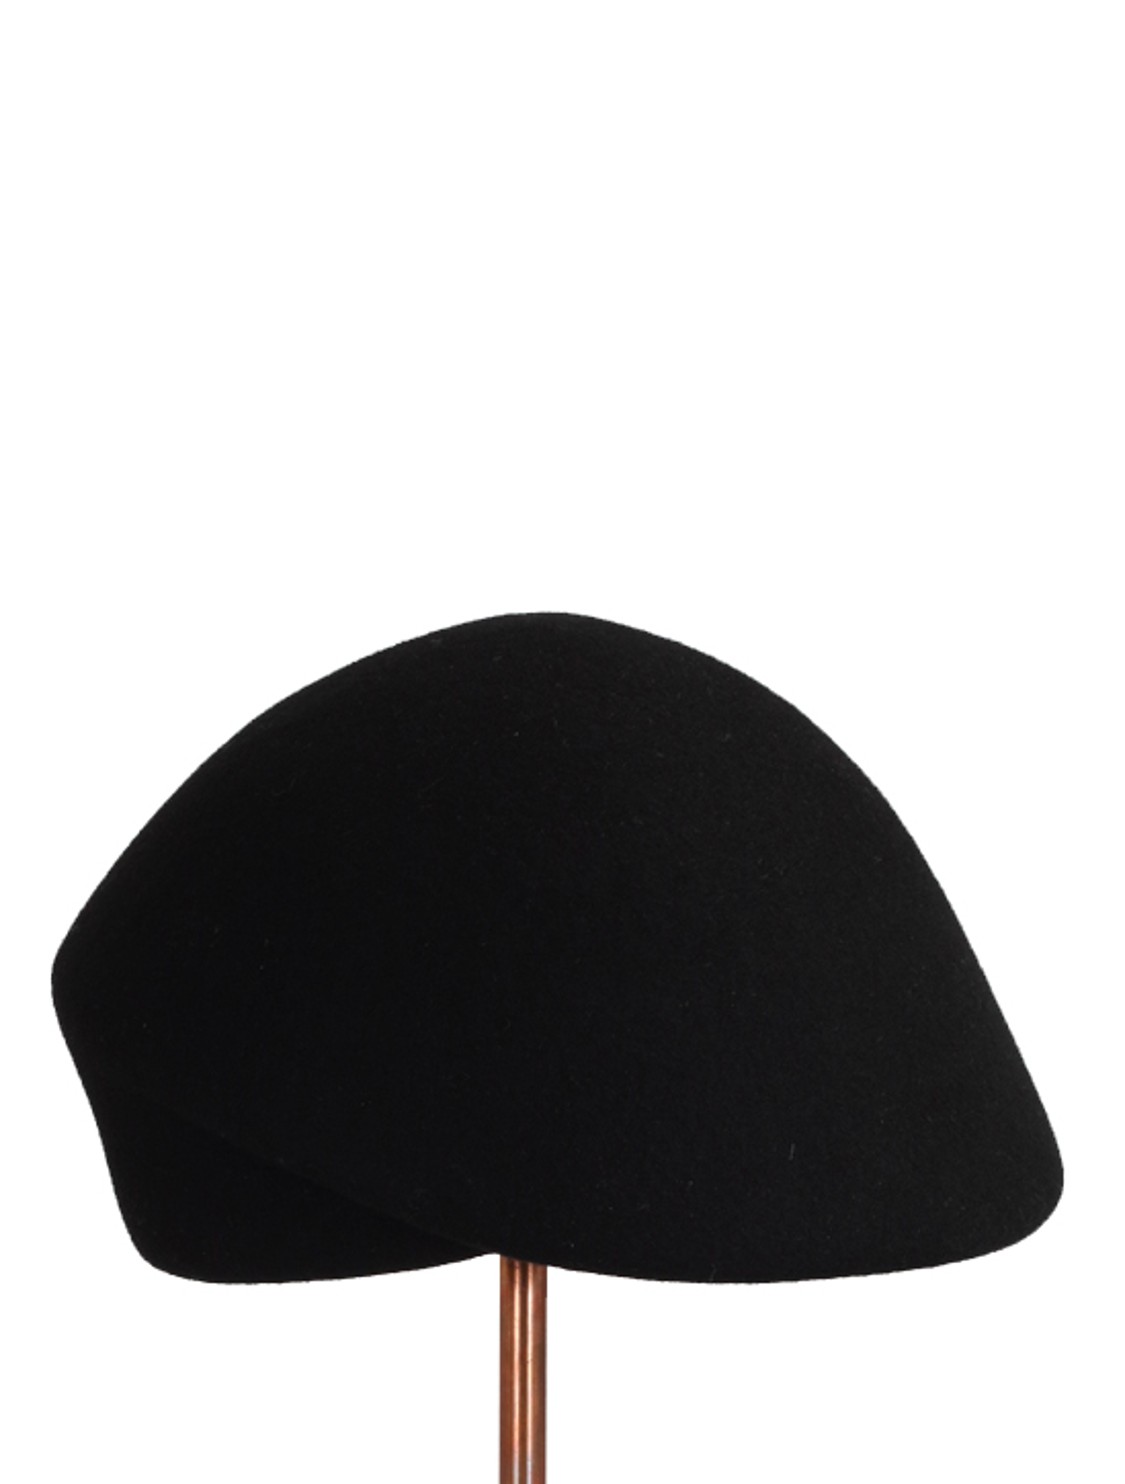 shop Flapper Sales Accessori: Cappello Flapper, modello Guendalina, berretto in lana nera.

Composizione: 100% lana. number 1541